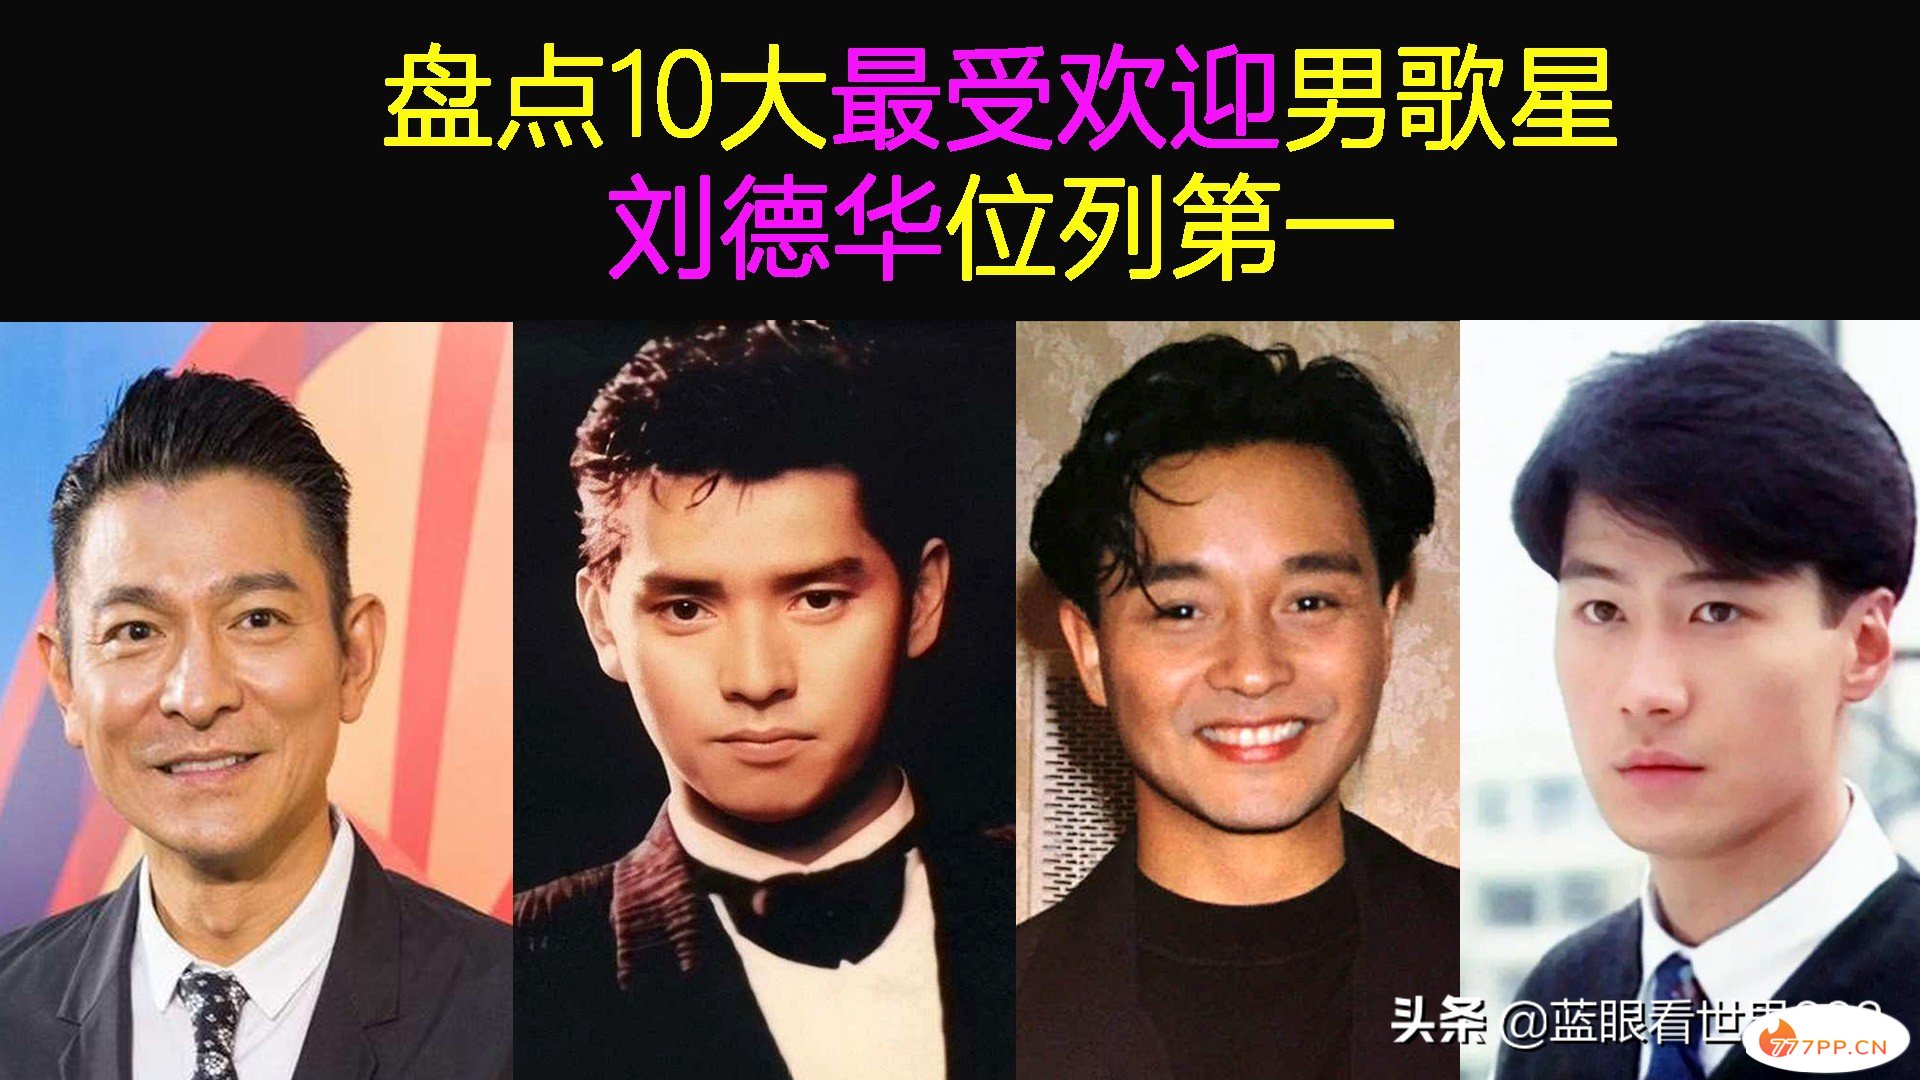 盘点香港10大最受欢迎男歌星，刘德华6次居首，张学友竟没上榜？